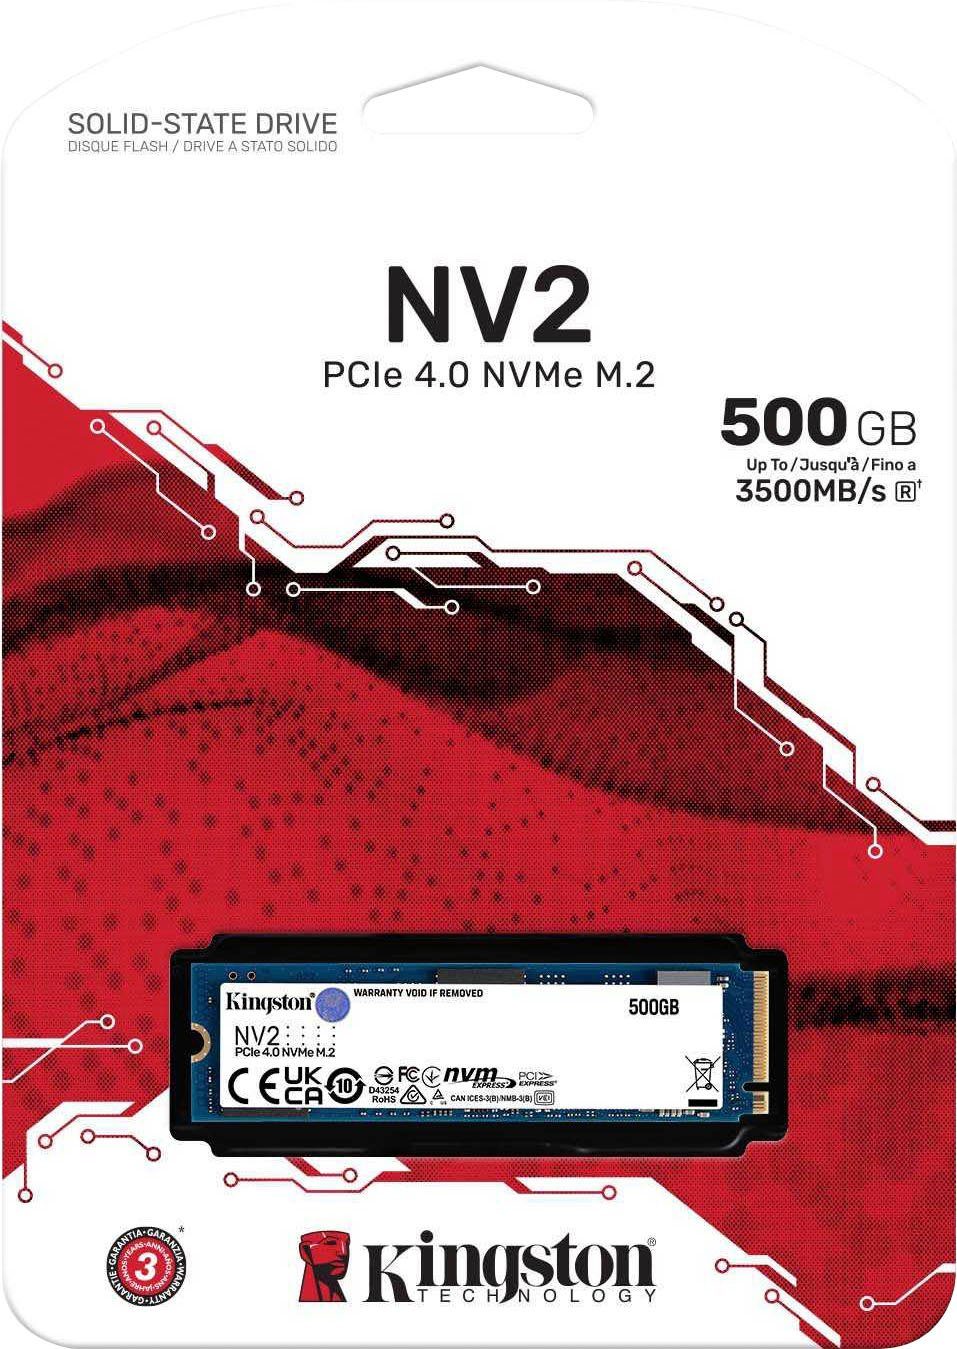 Kingston NV2 PCIe 4.0 NVMe SSD 1000GB interne SSD (1000 GB) 3500 MB/S  Lesegeschwindigkeit, 2100 MB/S Schreibgeschwindigkeit, Ideal für Laptops  und PCs mit kleinem Formfaktor | SSD-Festplatten